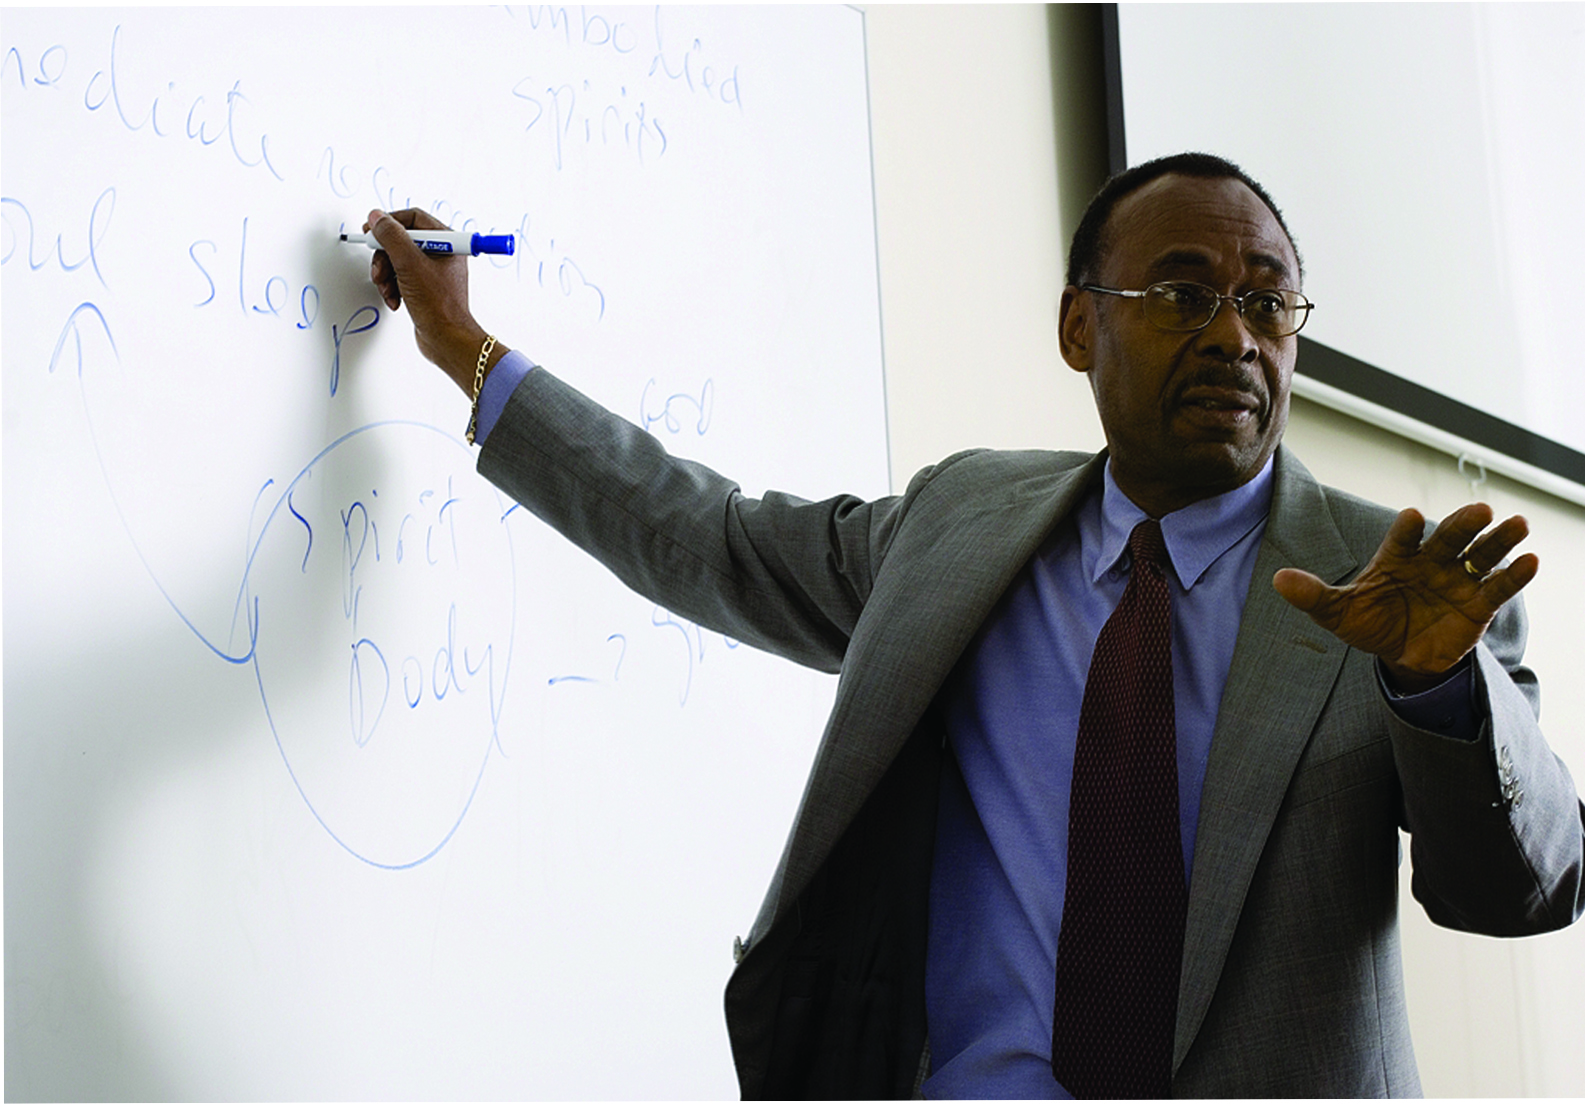 Black Denver faculty member standing at whiteboard